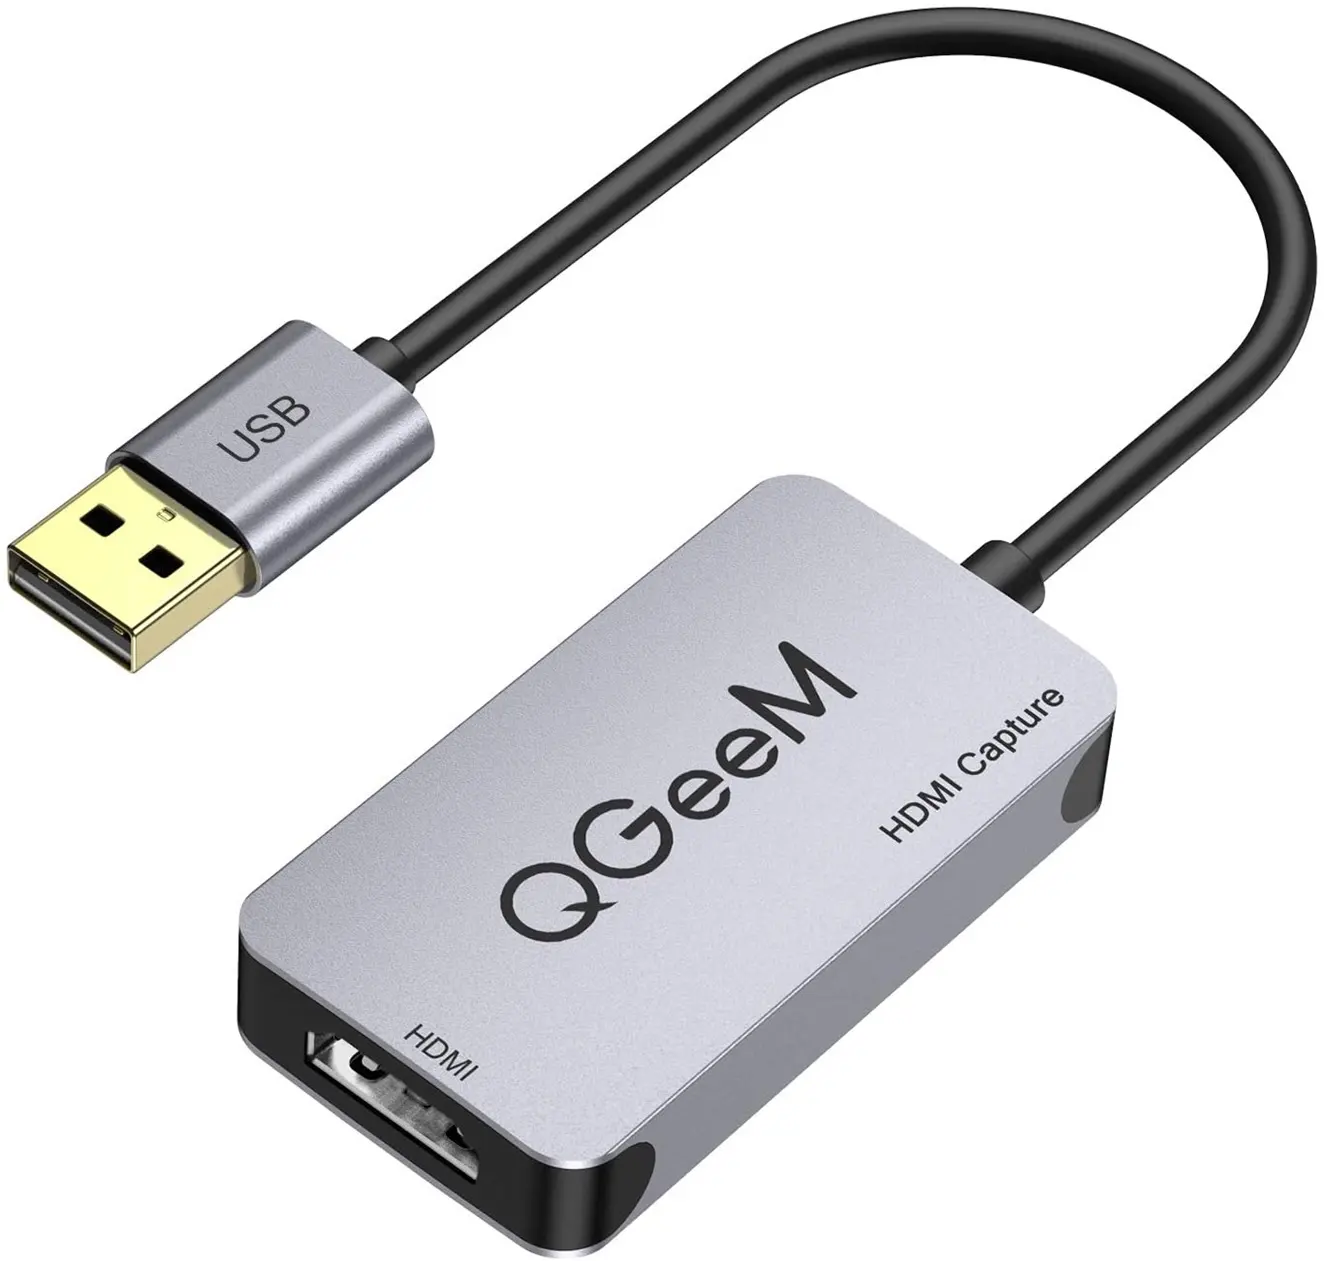 オーディオビデオキャプチャカード、QGeeM 1080P HDMIゲームキャプチャレコードデバイス、Windows、Linux for PS4と互換性のあるライブストリーミング